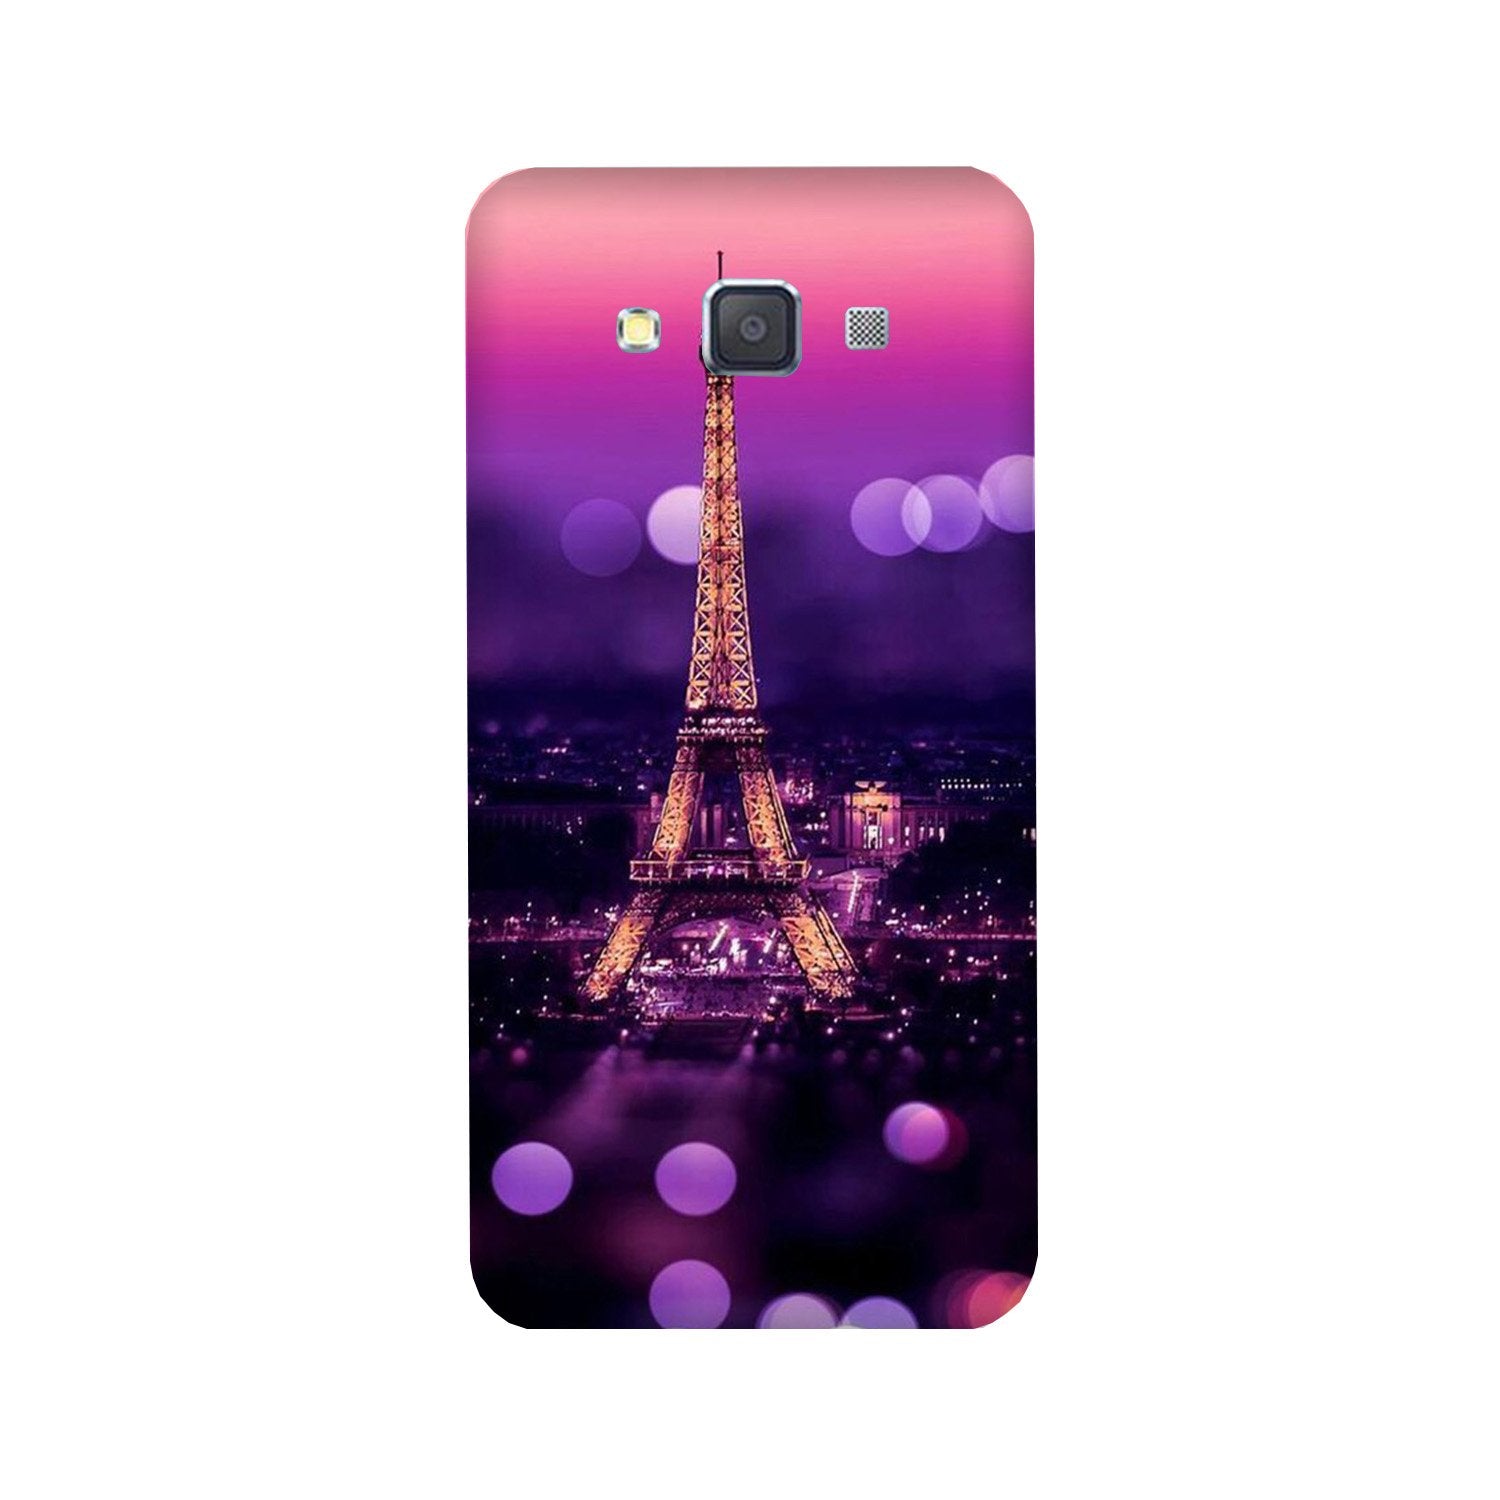 Eiffel Tower Case for Galaxy A5 (2015)